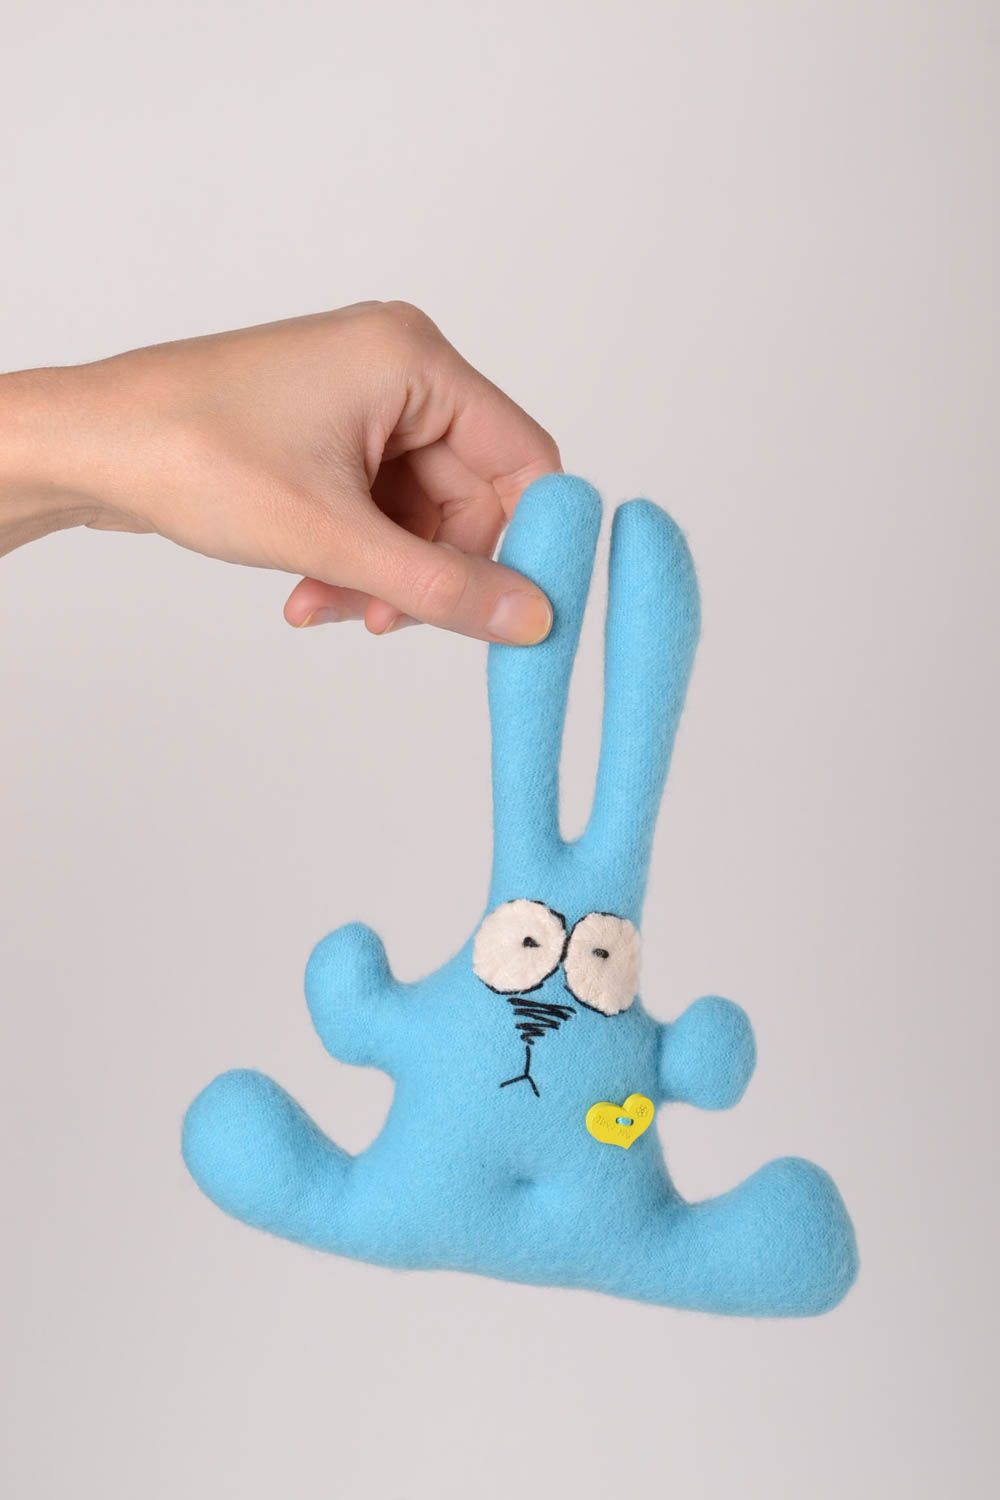 Детская игрушка ручной работы игрушка из флиса мягкая игрушка заяц яркий голубой фото 2